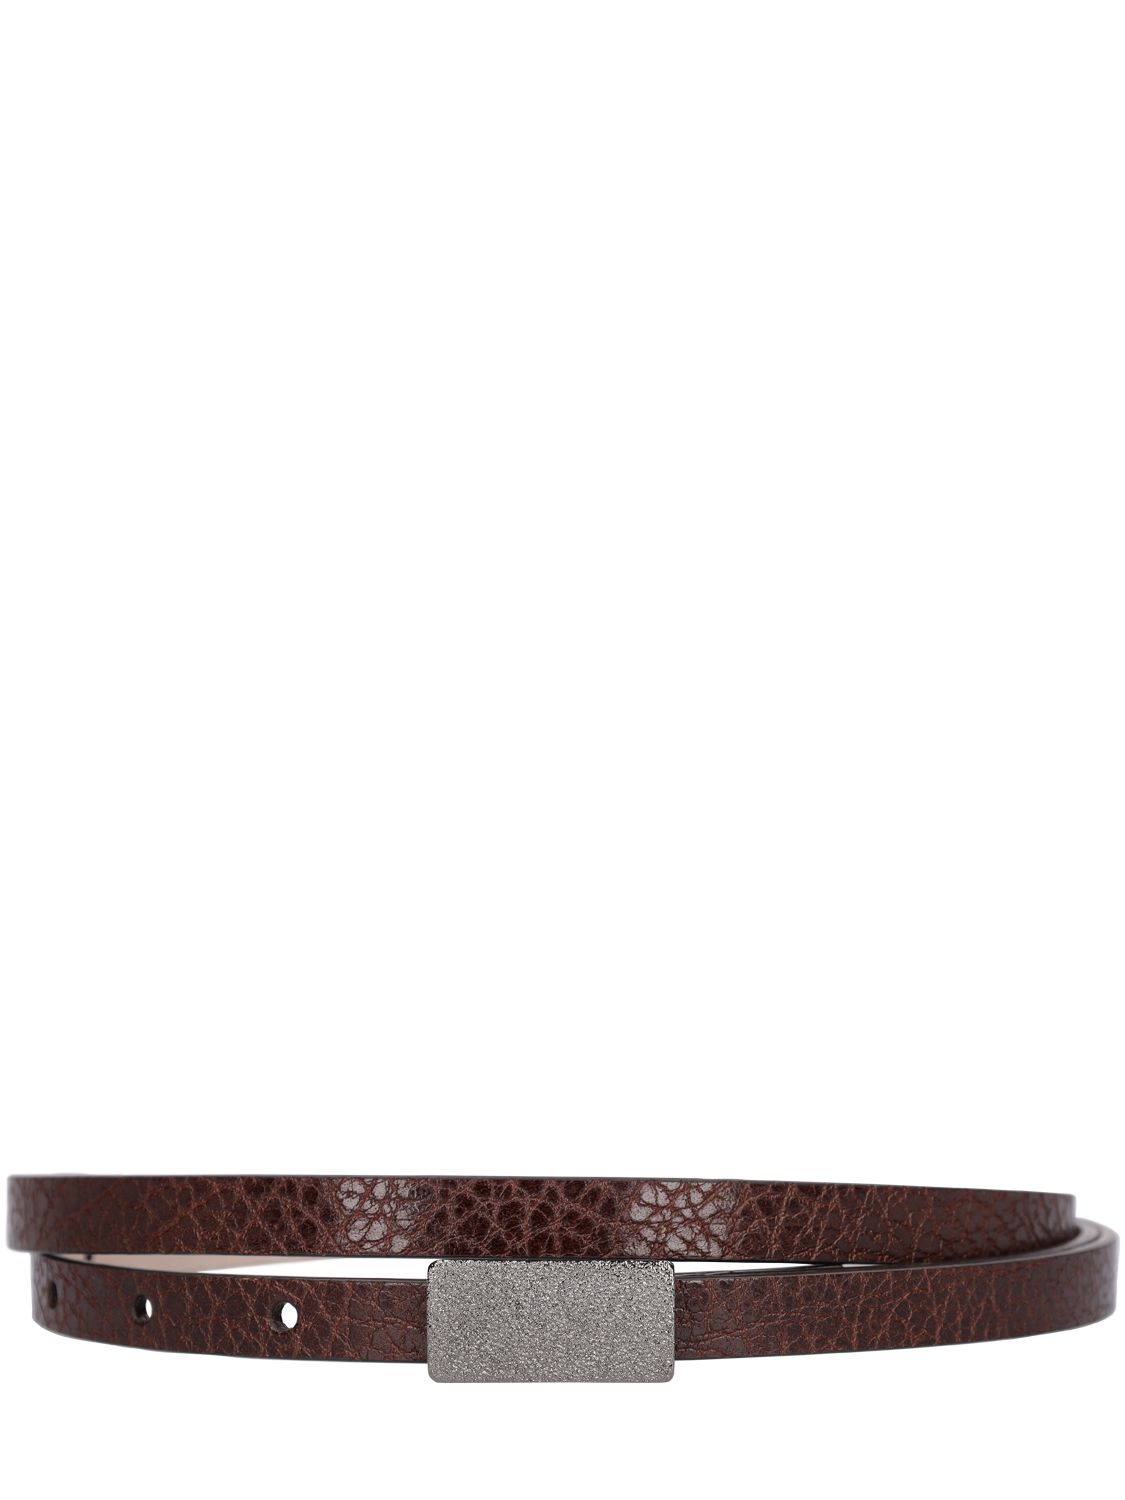 1cm Embellished Shiny Leather Belt